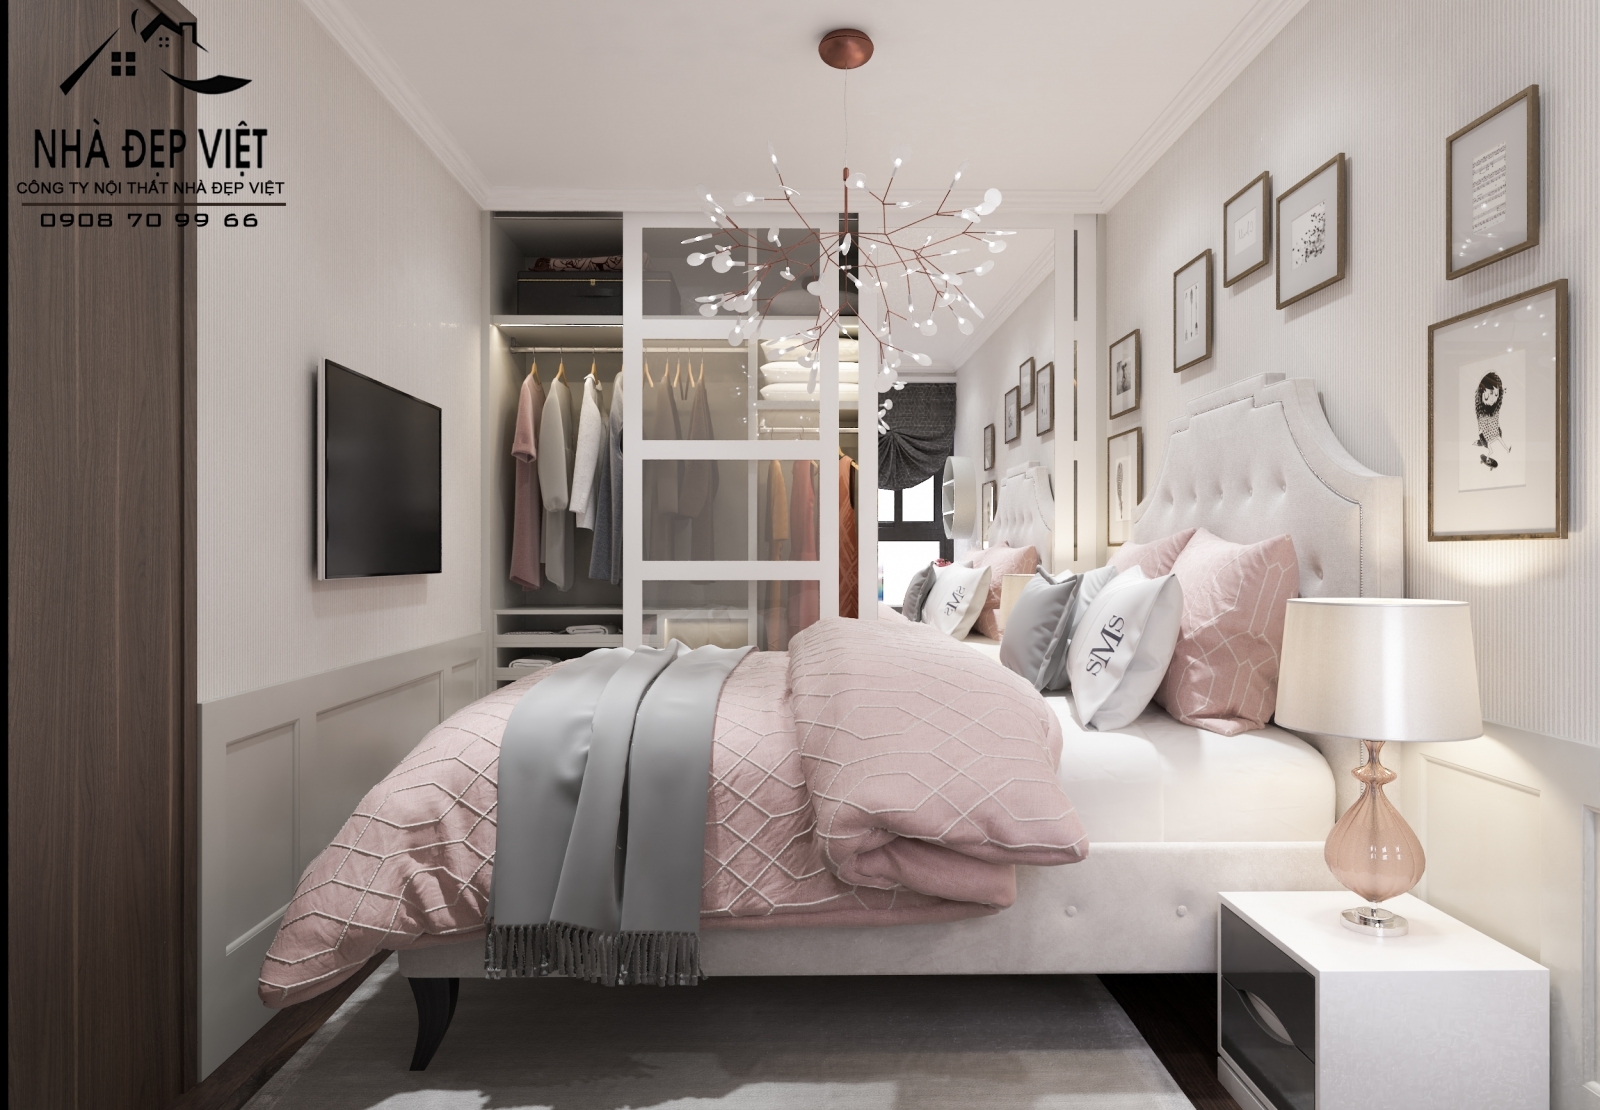 Tổng hợp cách bố trí phòng ngủ nhỏ đẹp đơn giản hiện đại nhất